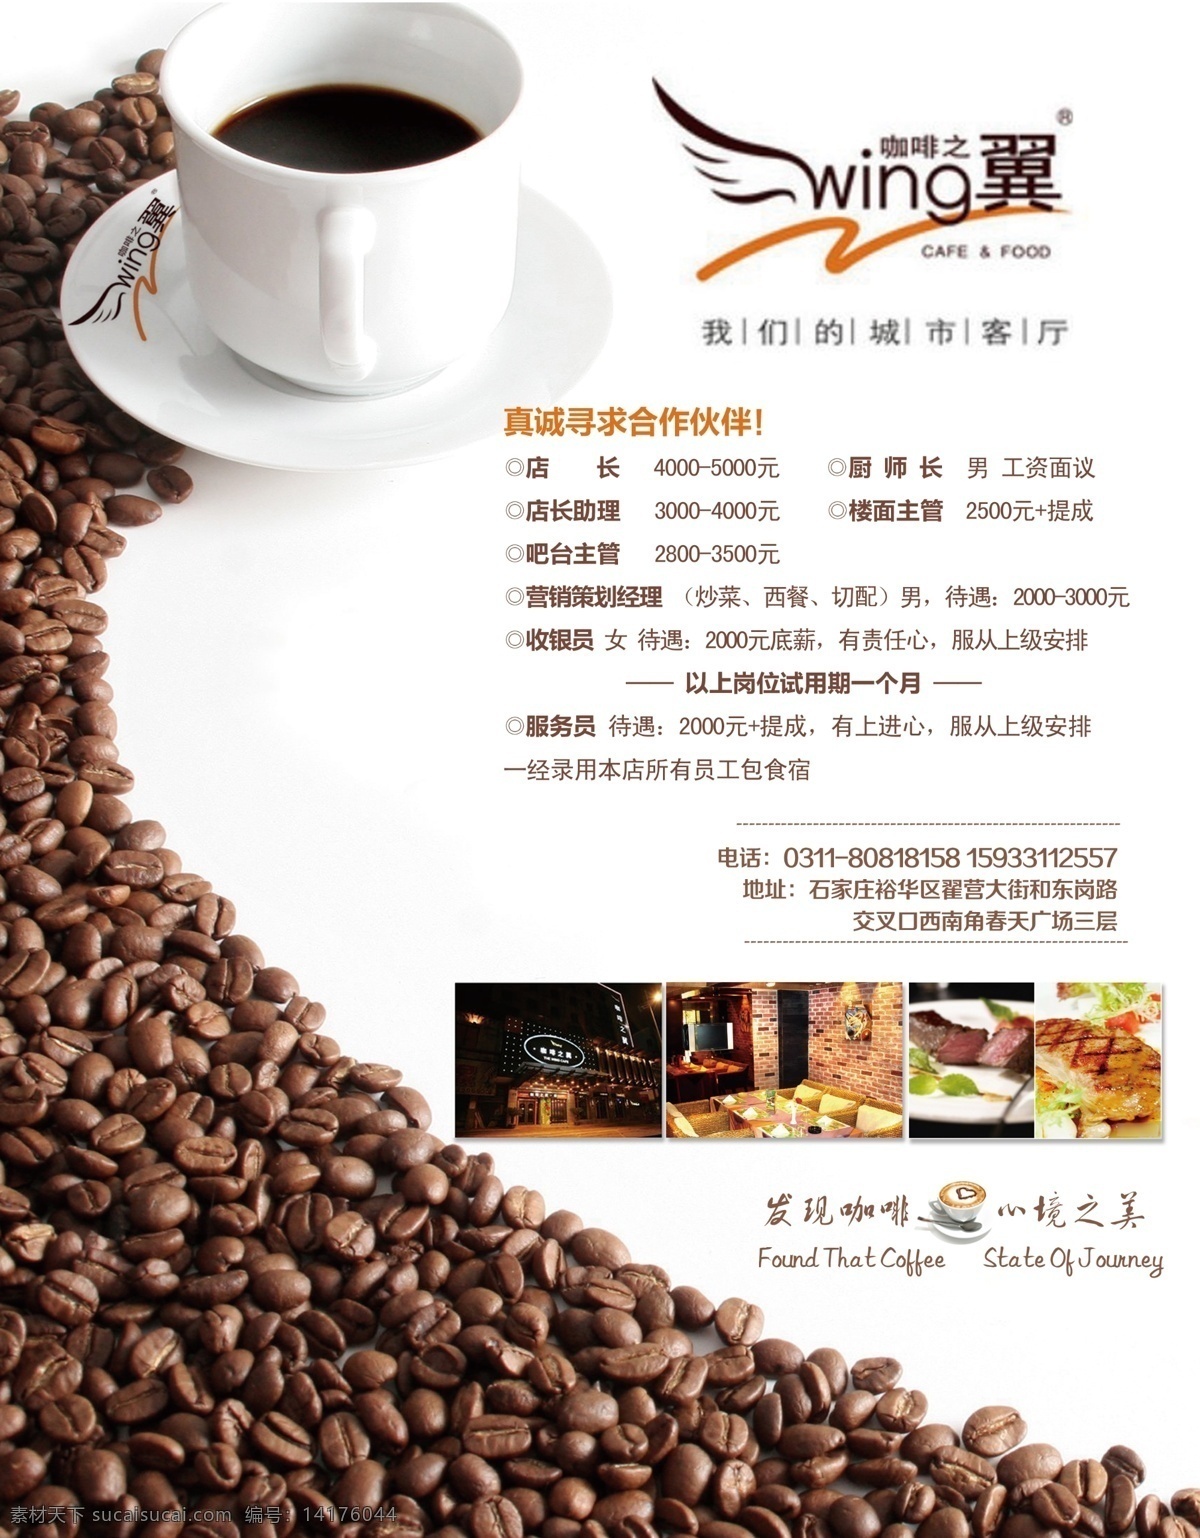 咖啡馆 招聘 广告 咖啡 浪漫 咖啡豆 咖啡杯 菜单 模板